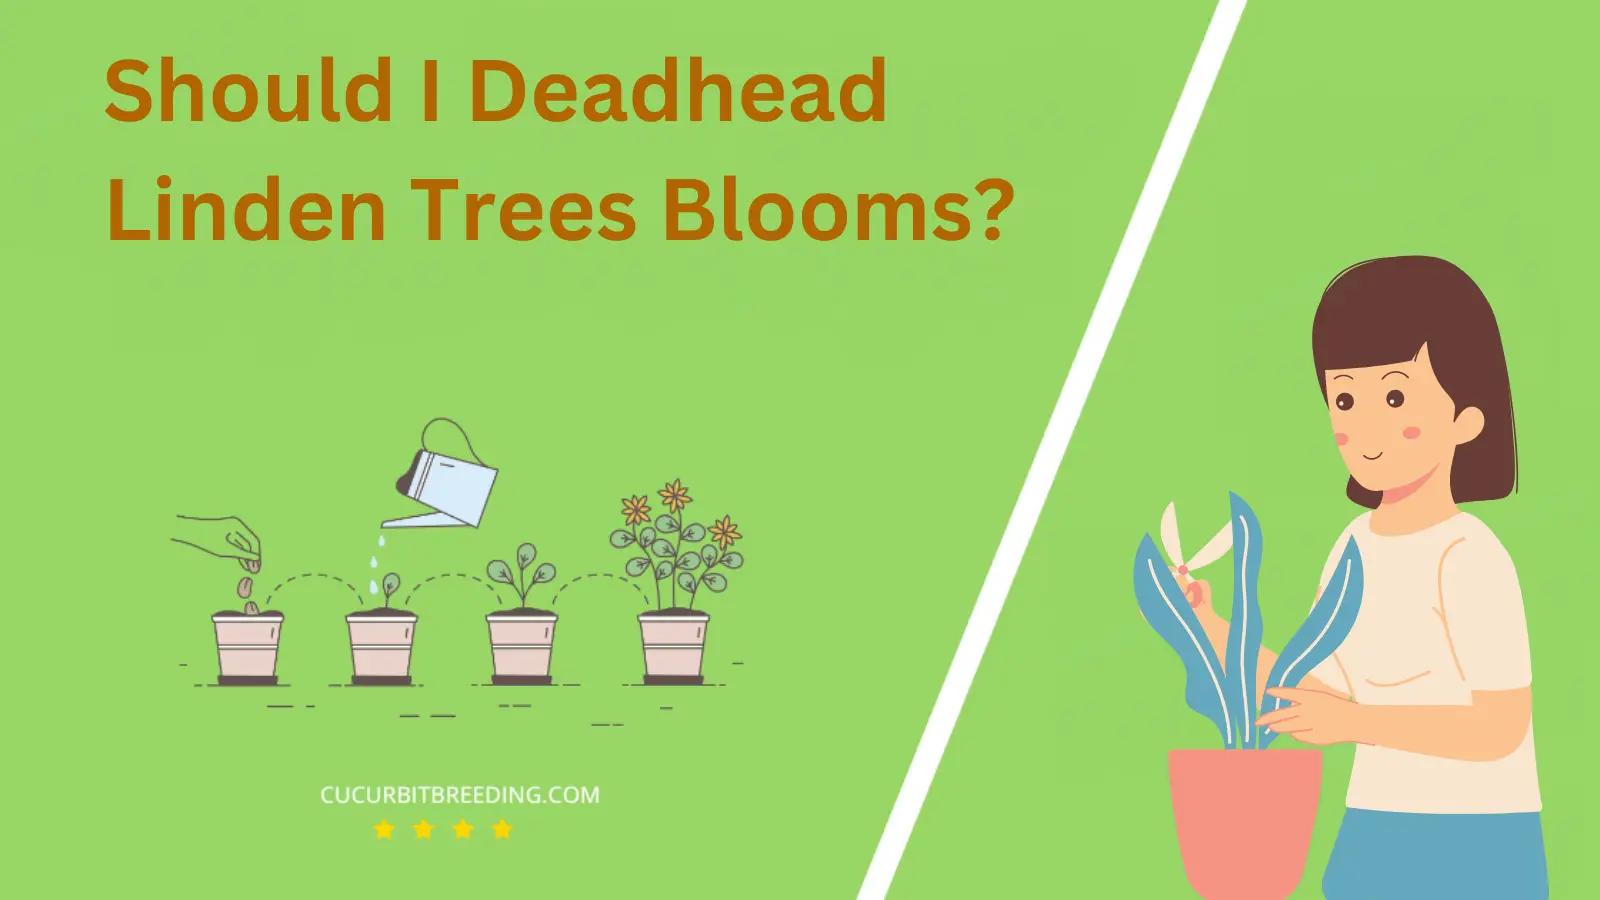 Should I Deadhead Linden Trees Blooms?